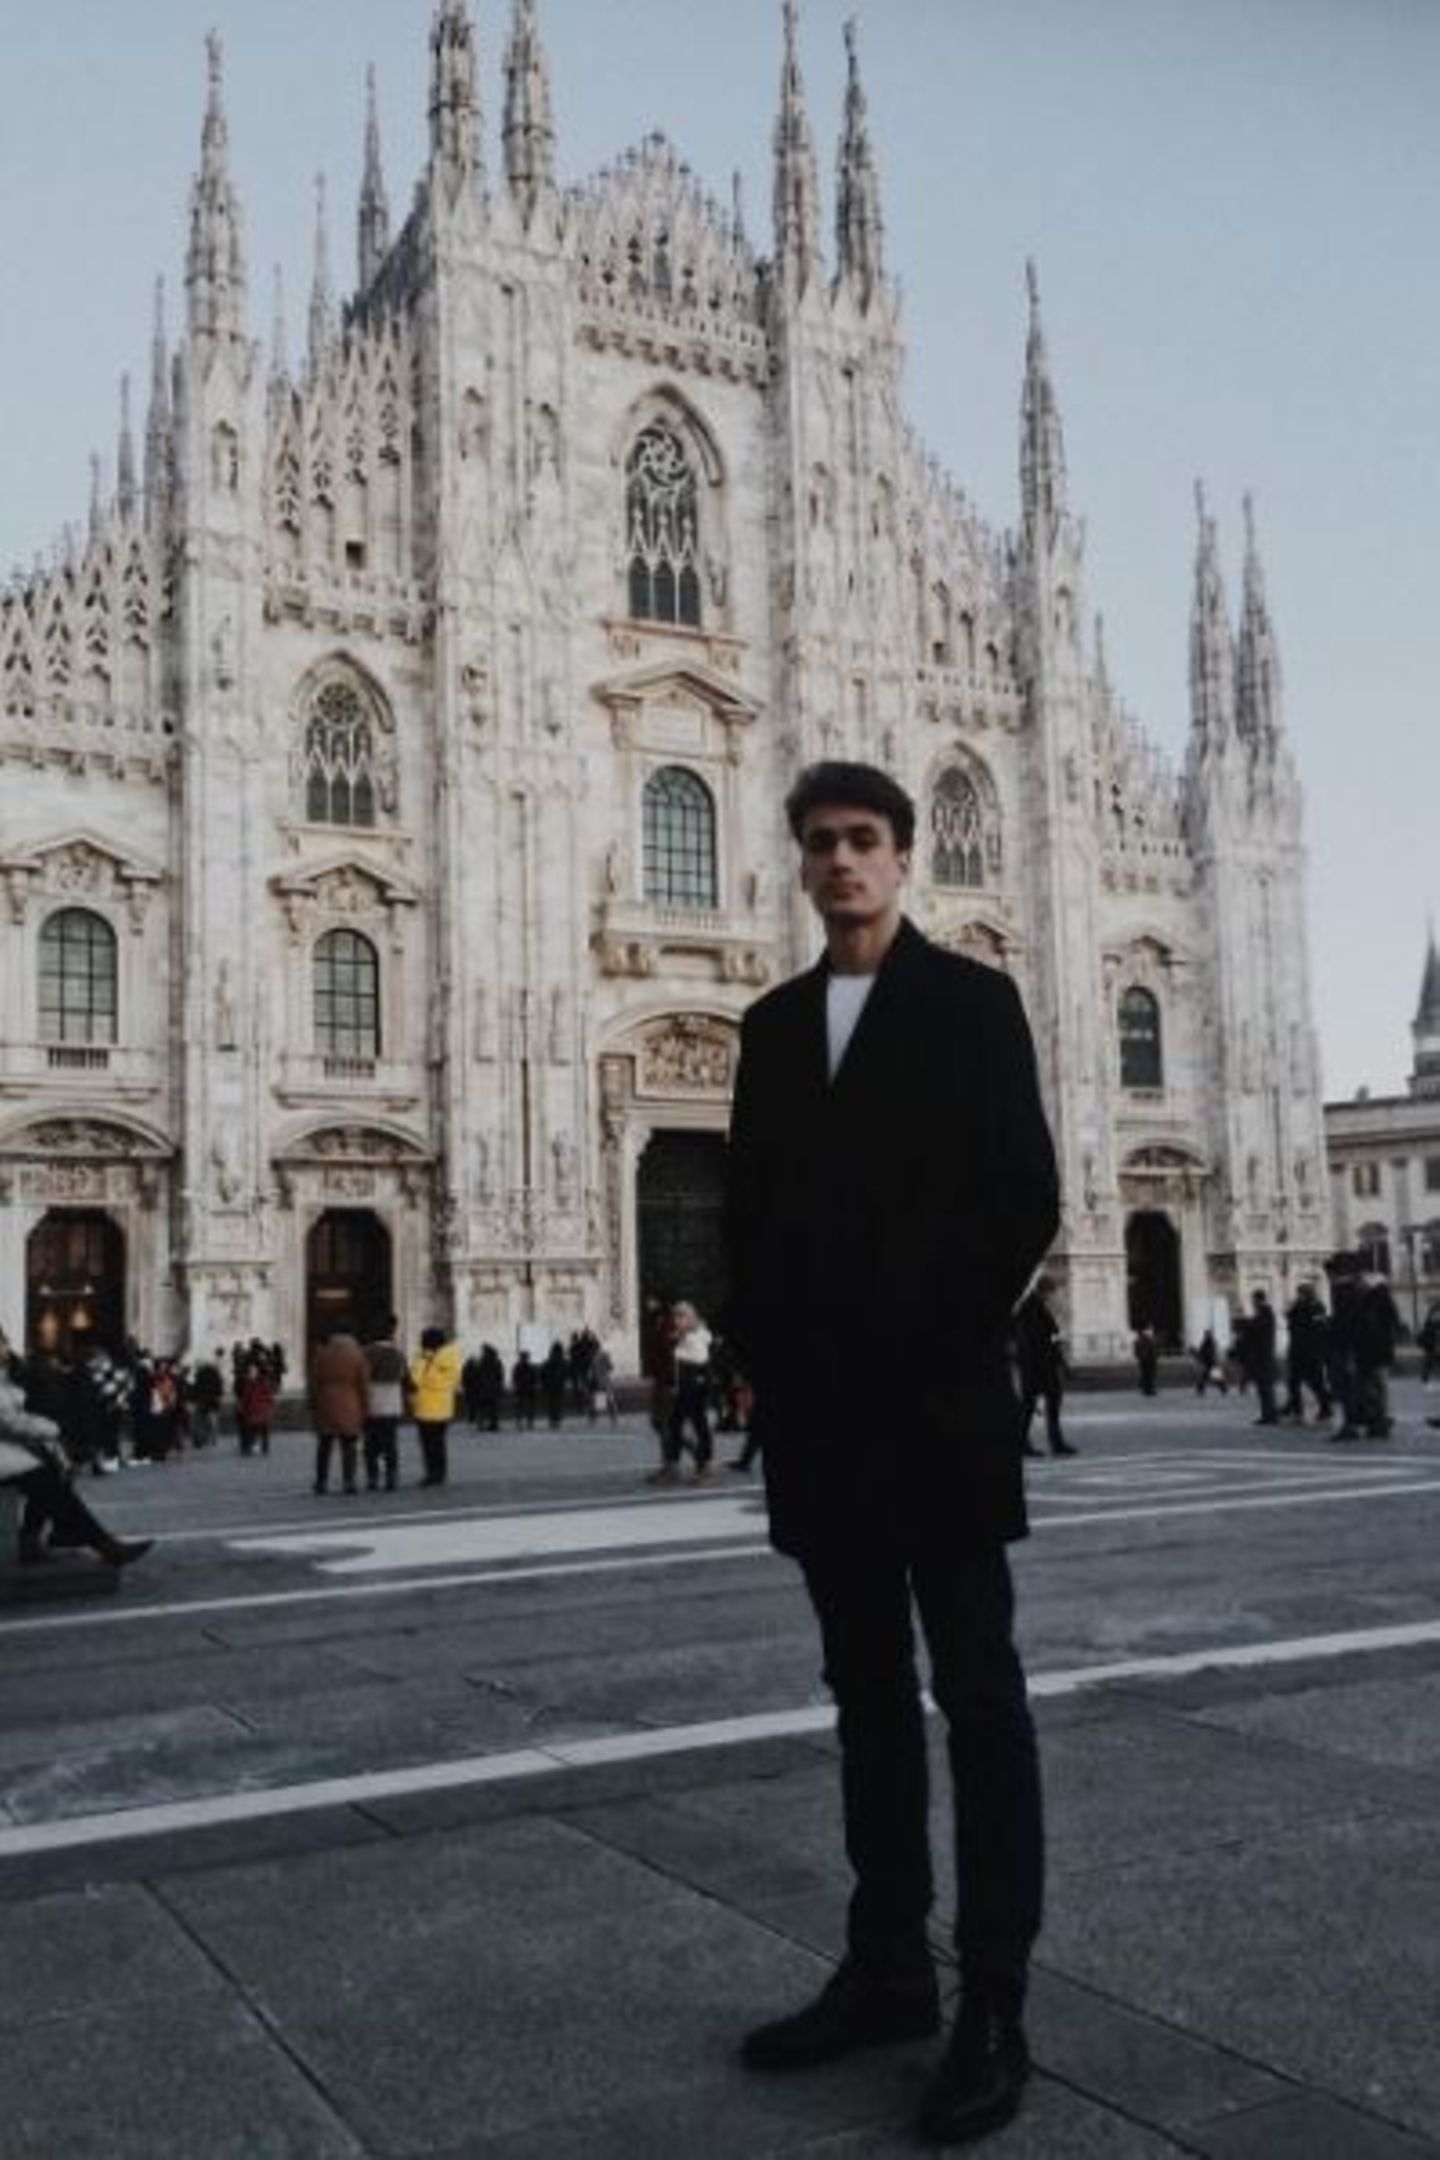 Sein bisher größter Erfolg als Model war die diesjährige Fashionweek in Mailand. Hier lief er für Luxus-Labels wie Dolce & Gabbana über den Laufsteg und hatte einen ziemlich ausgebuchten Terminplaner. Wir sind uns sicher (und hoffen schwer): Da wird noch einiges kommen!